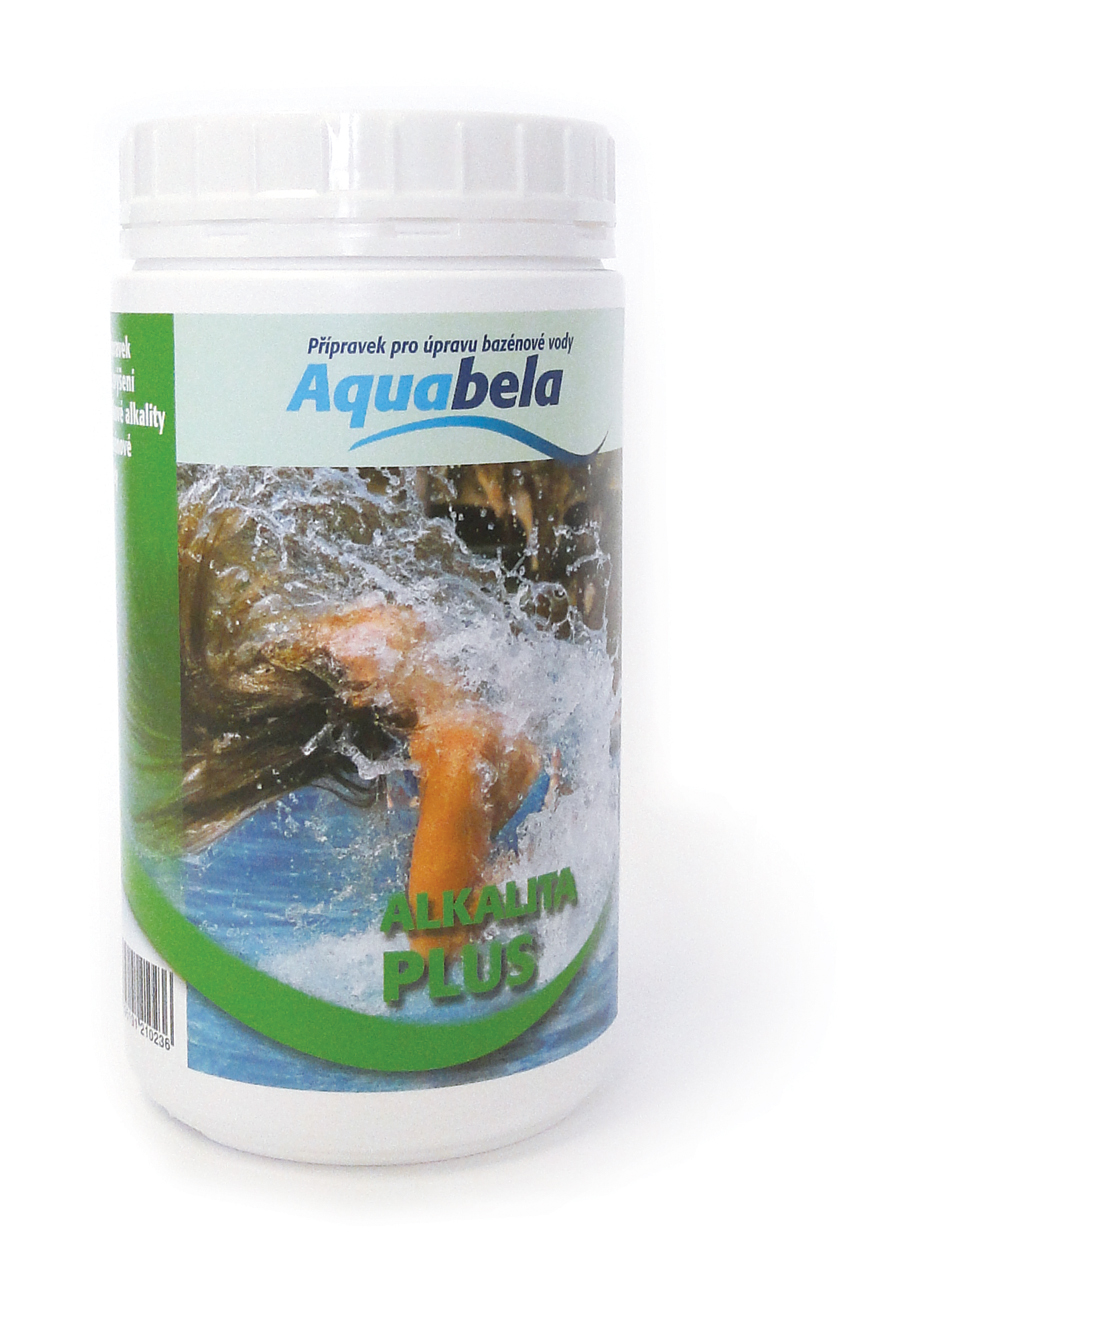 Aquabela Alkalita plus - lahev 1kg